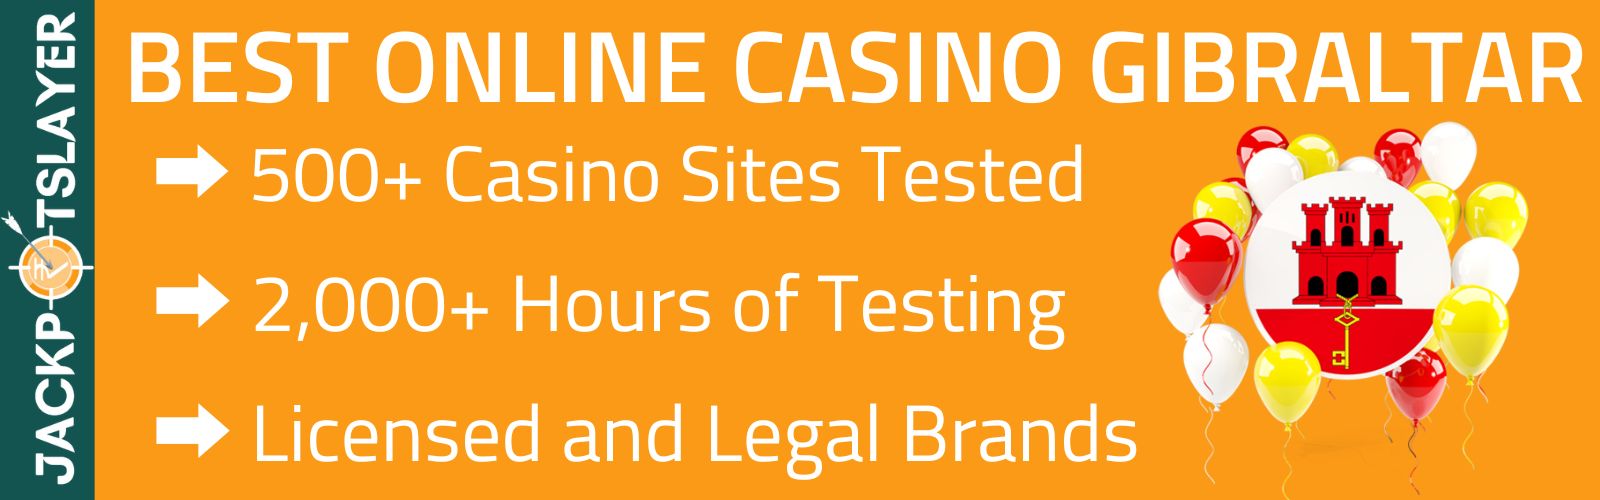 Best Online Casinos Gibraltar